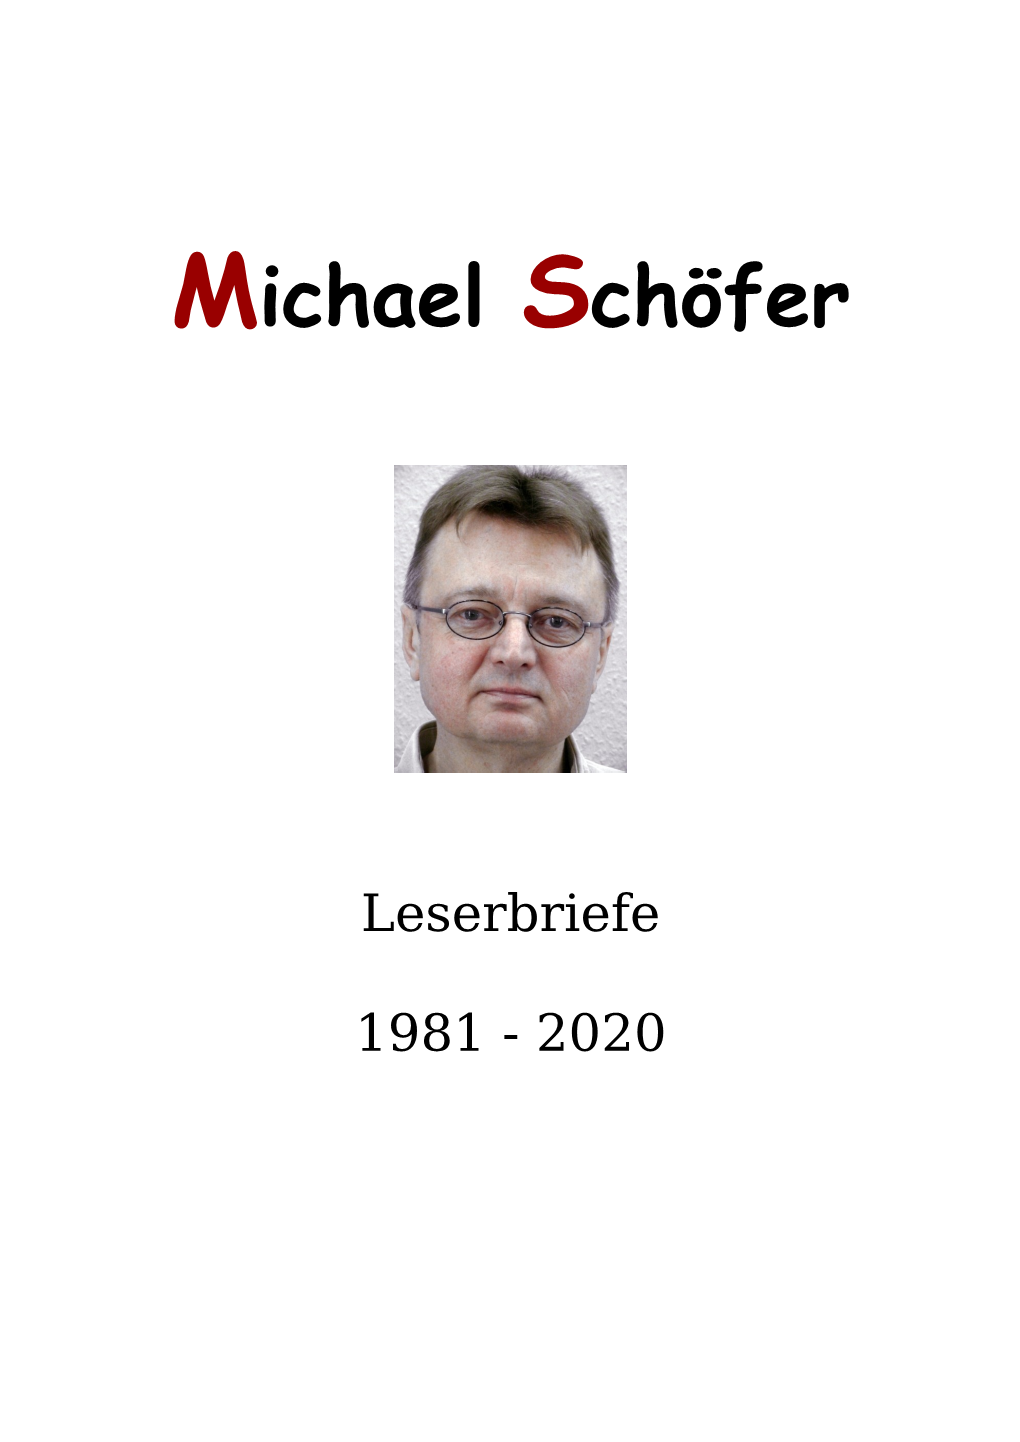 Michael Schöfer